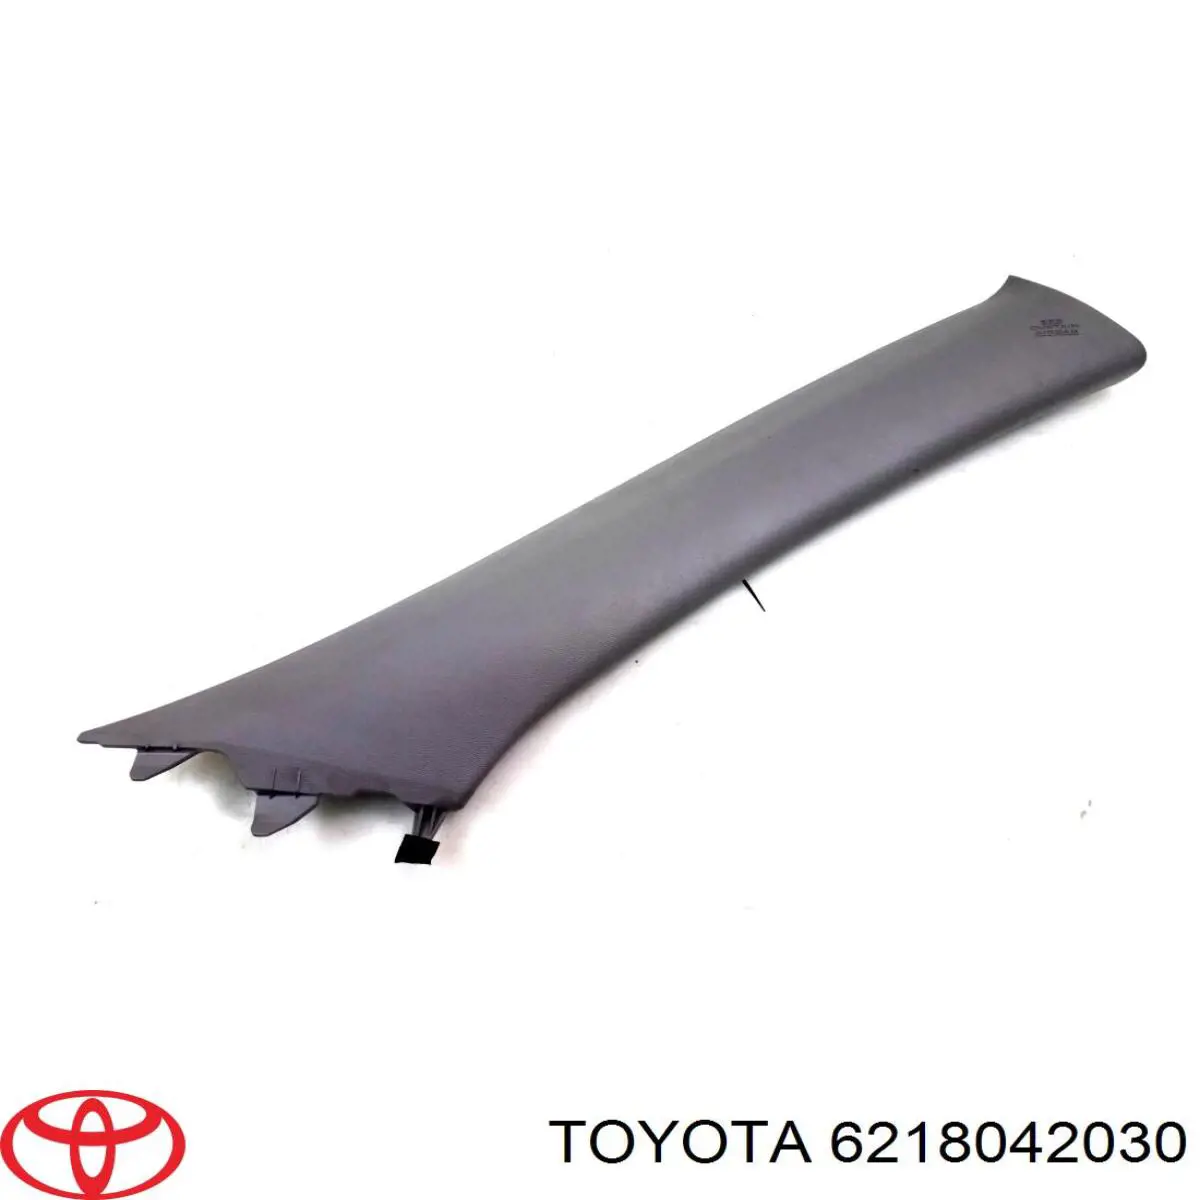 6218042030 Toyota cinto de segurança (airbag de estore lateral esquerdo)